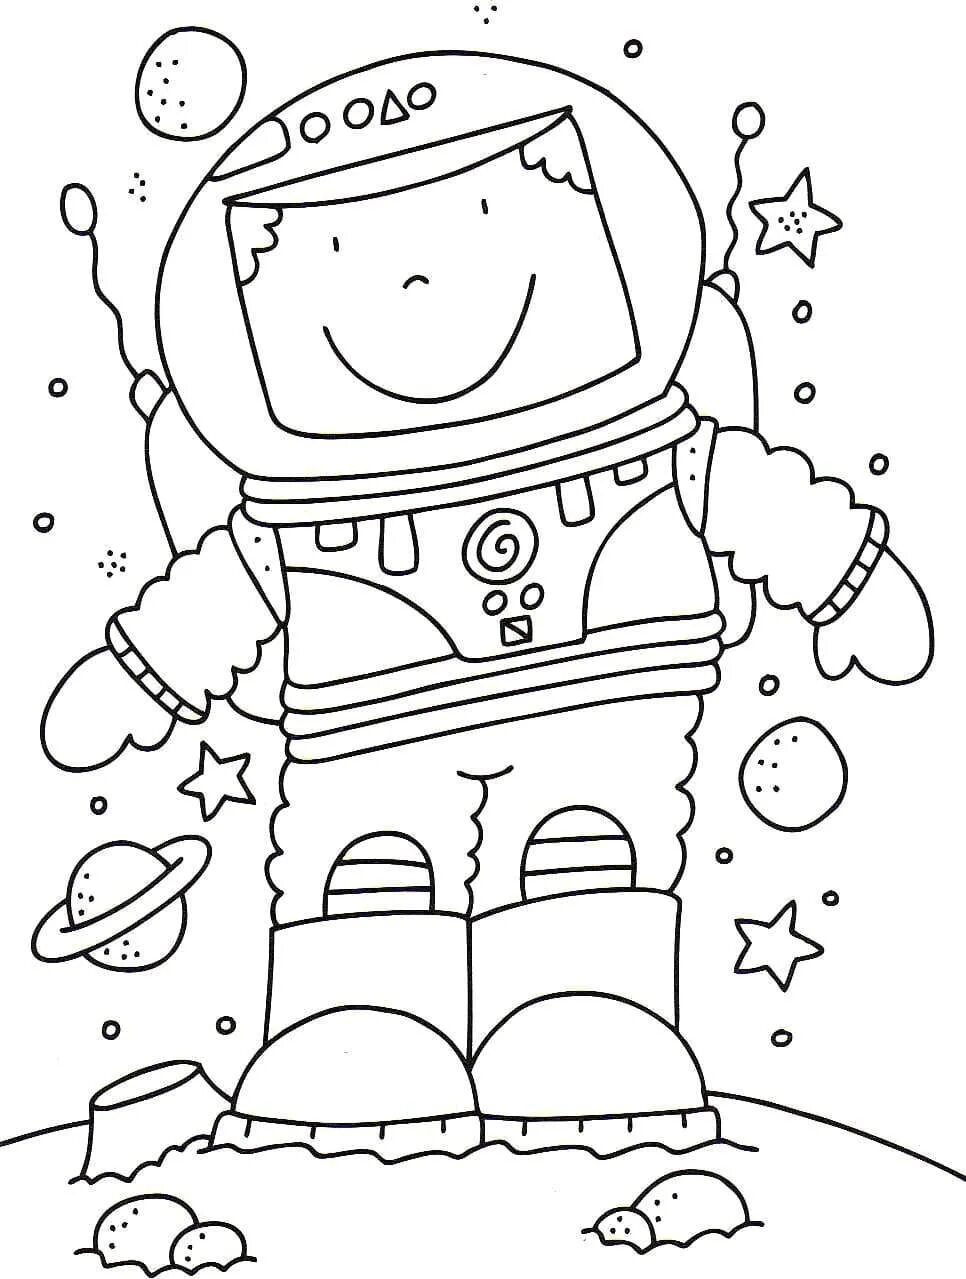 Космос раскраска для детей. Раскраска. В космосе. Космические раскраски для детей. Детские раскраски космос. Космонавт раскраска для детей 4 5 лет